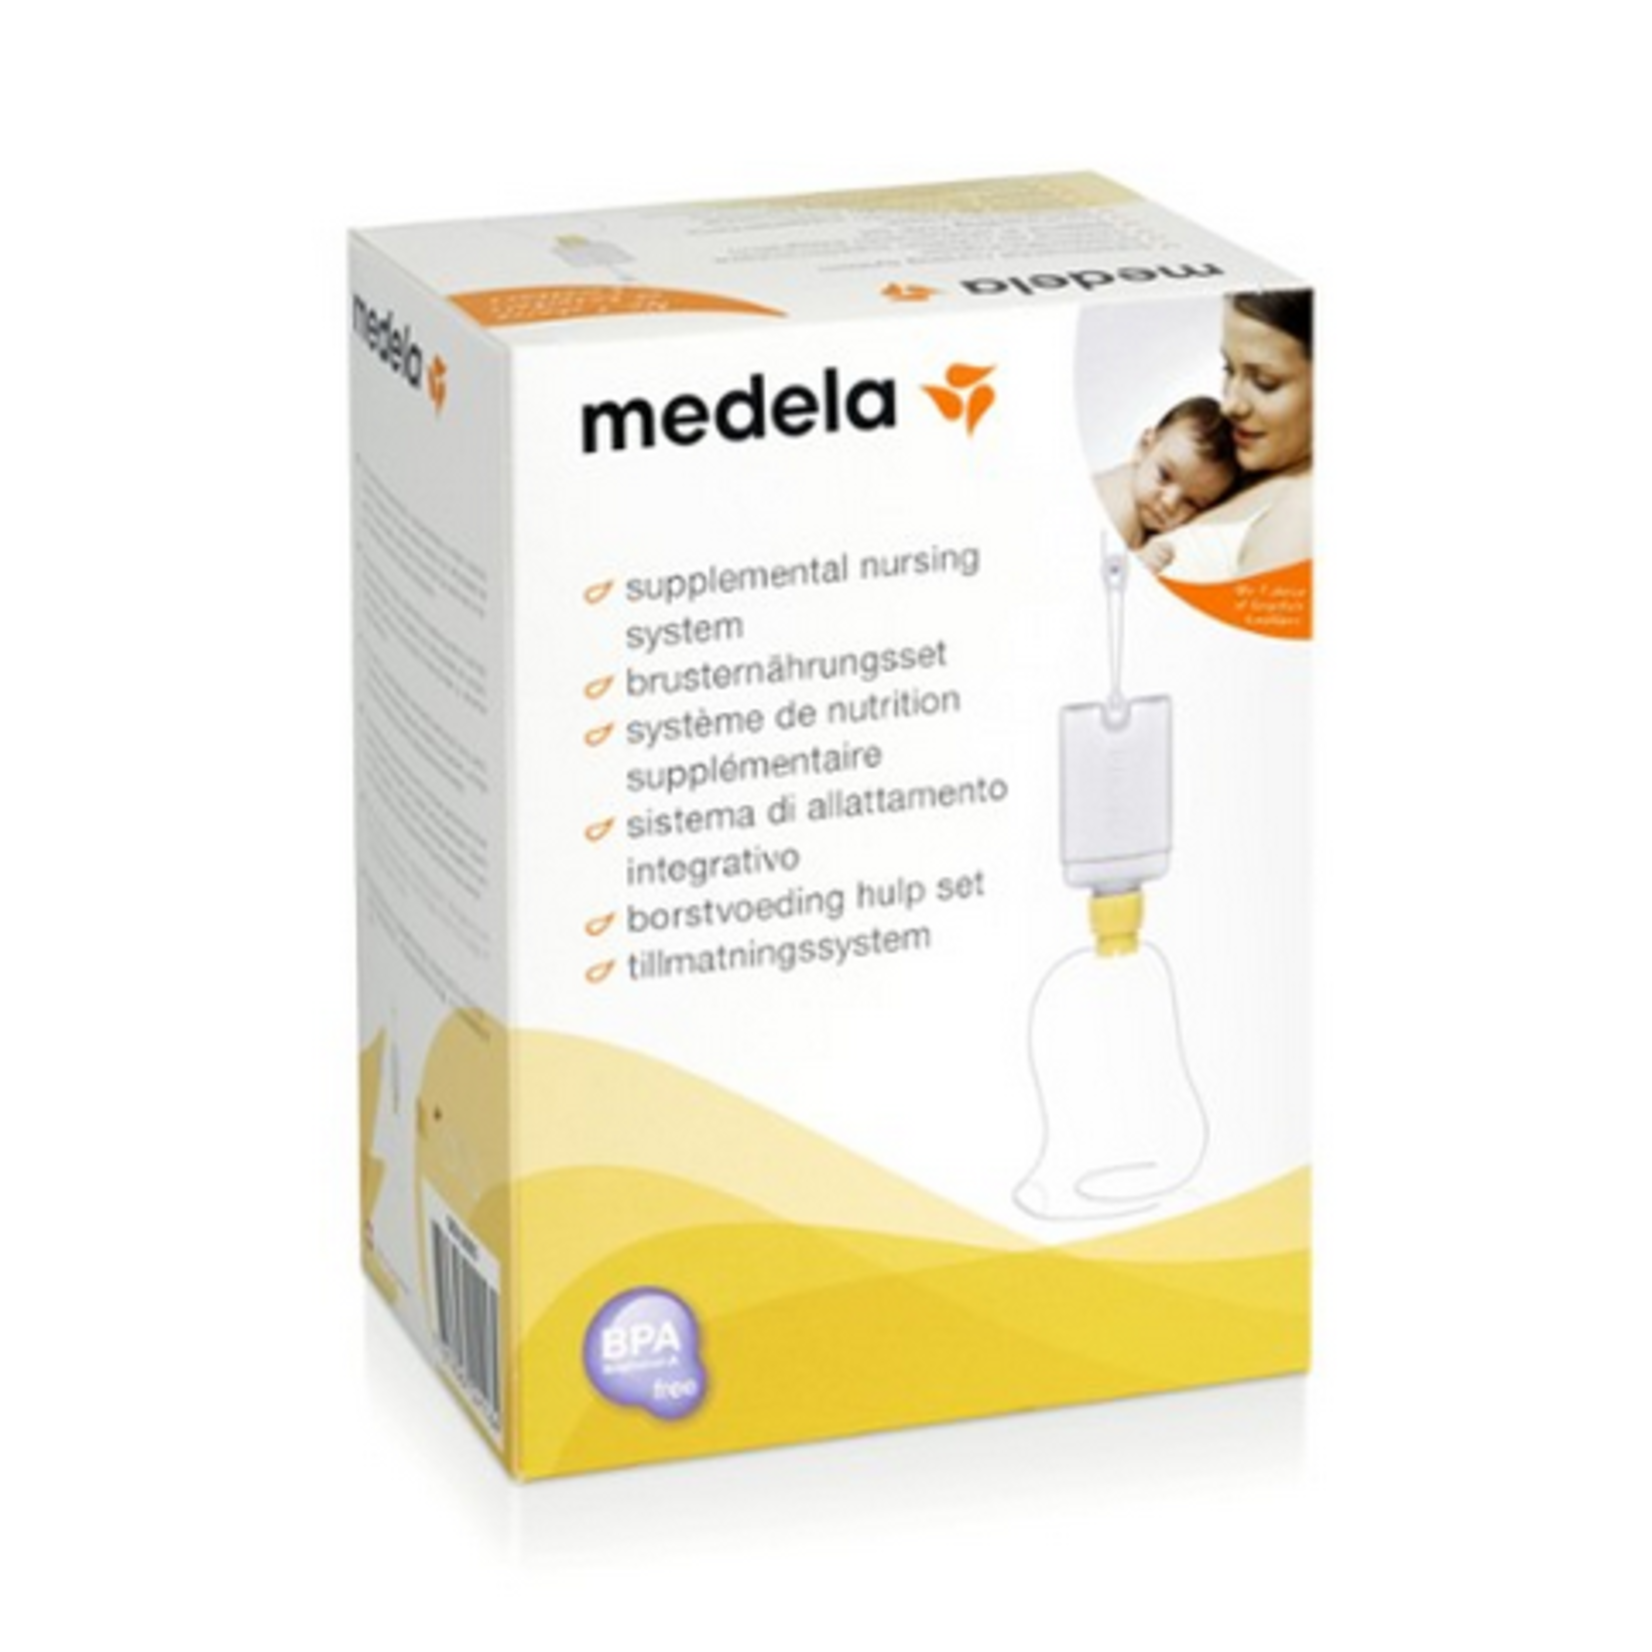 Medela MEDELA SUPPLEMENTAL NURSING SYSTEM WITH 150 ML BOTTLE